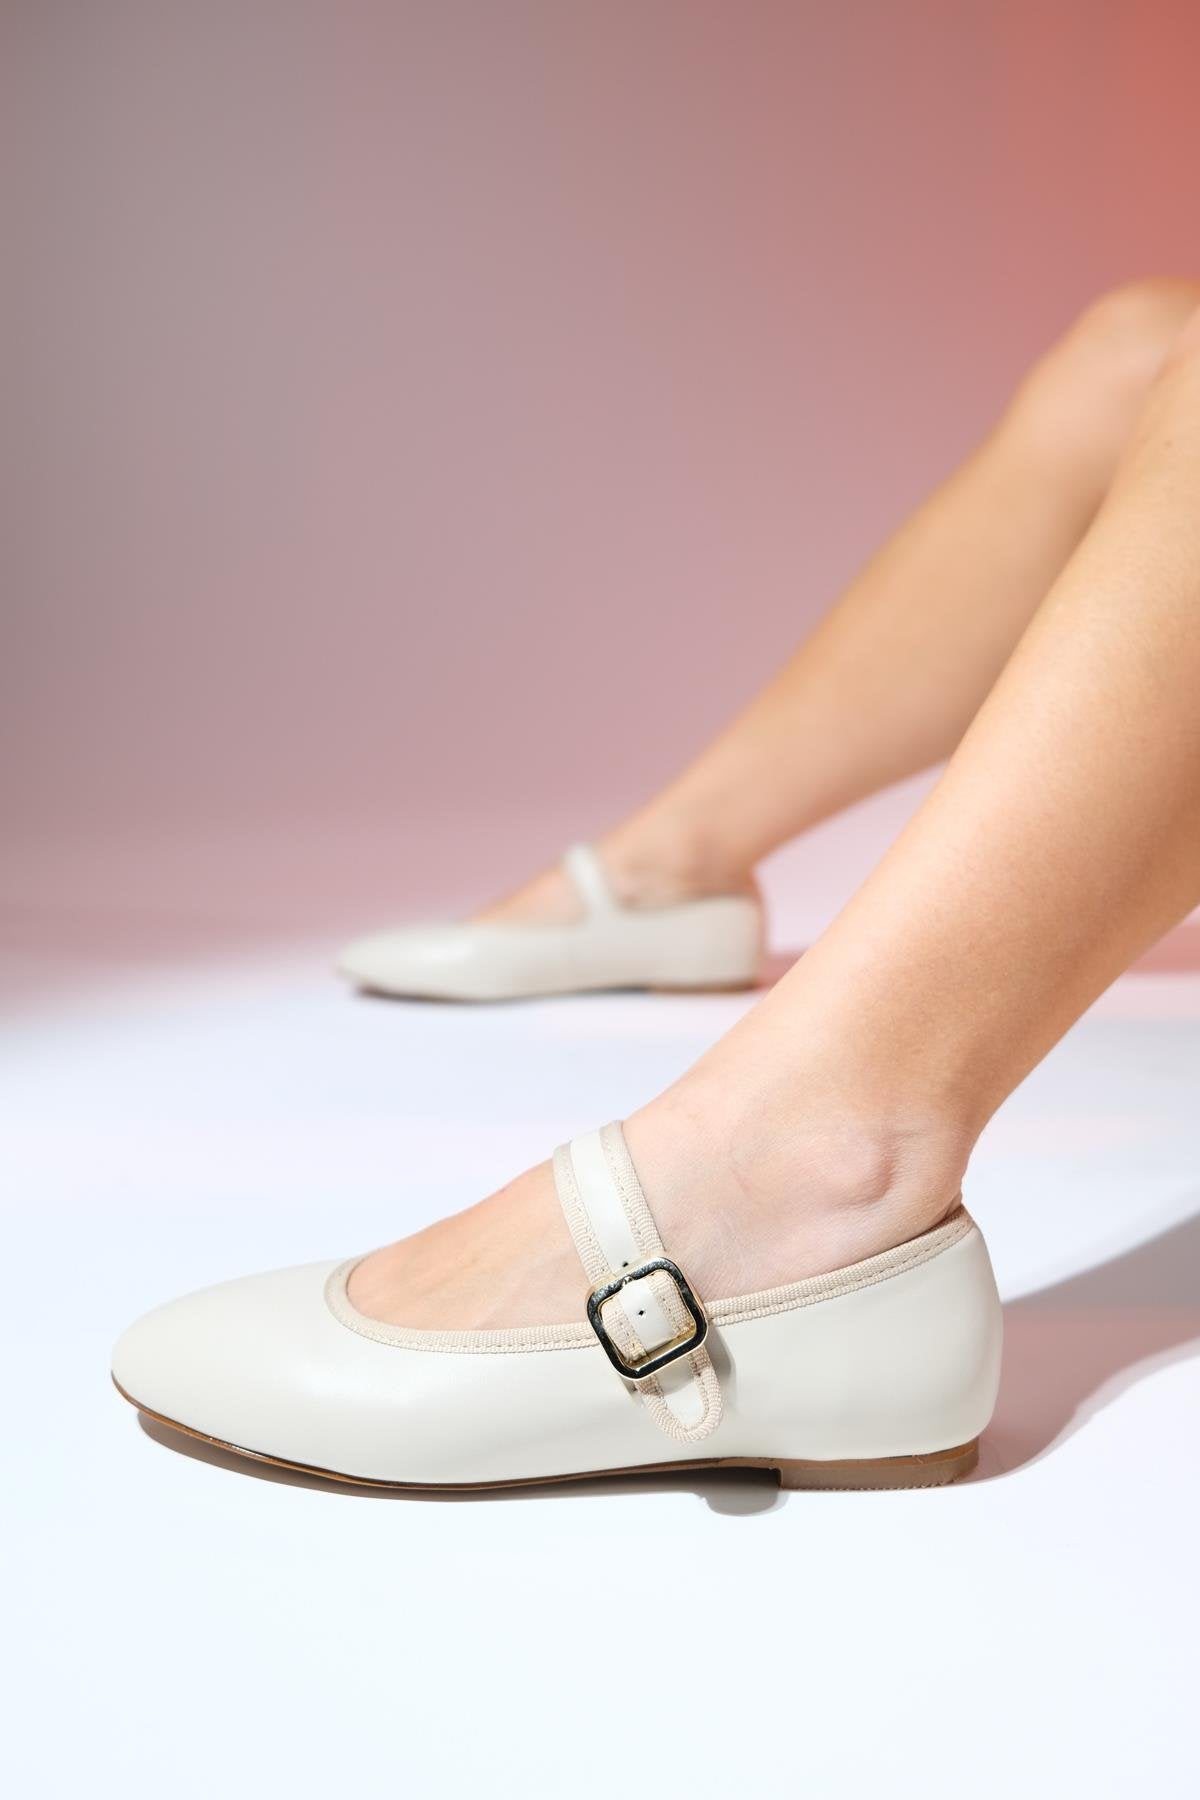 ROLLO Beige Skin Women's Ballerina Shoes - Lebbse